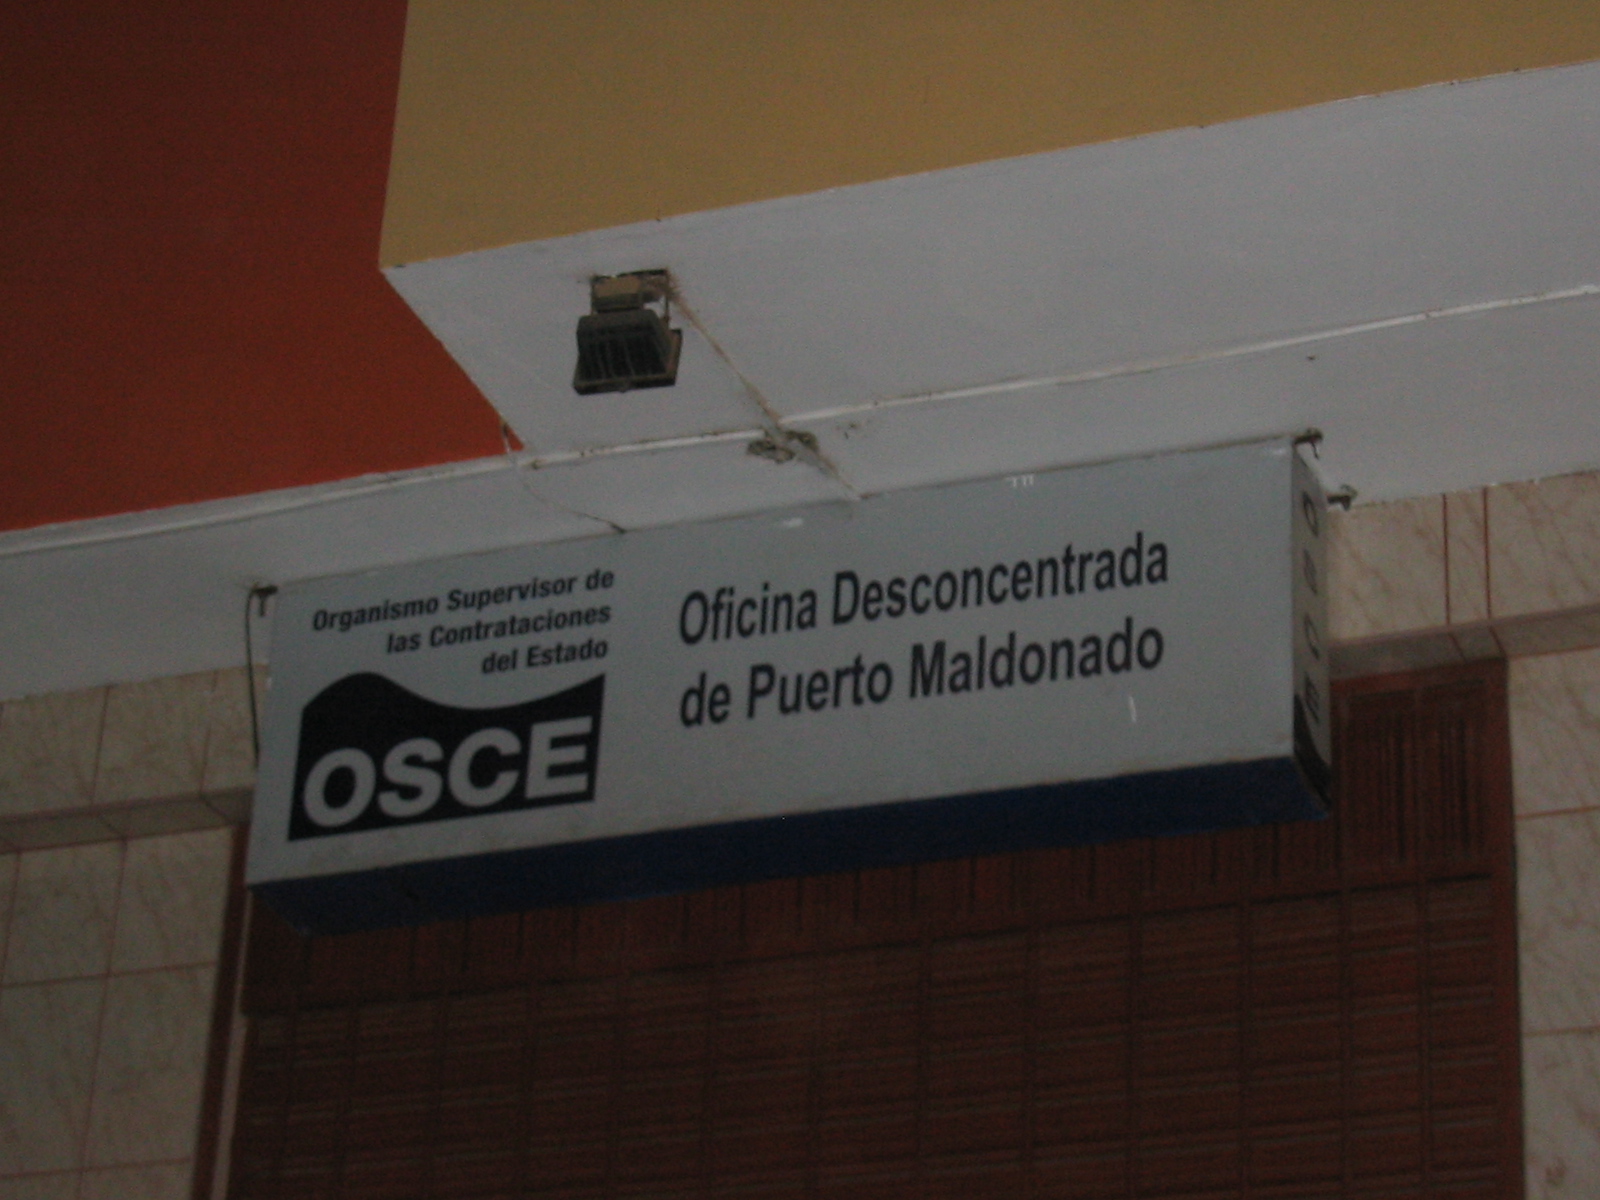 Oficina desconcentrada de Puerto Maldonado